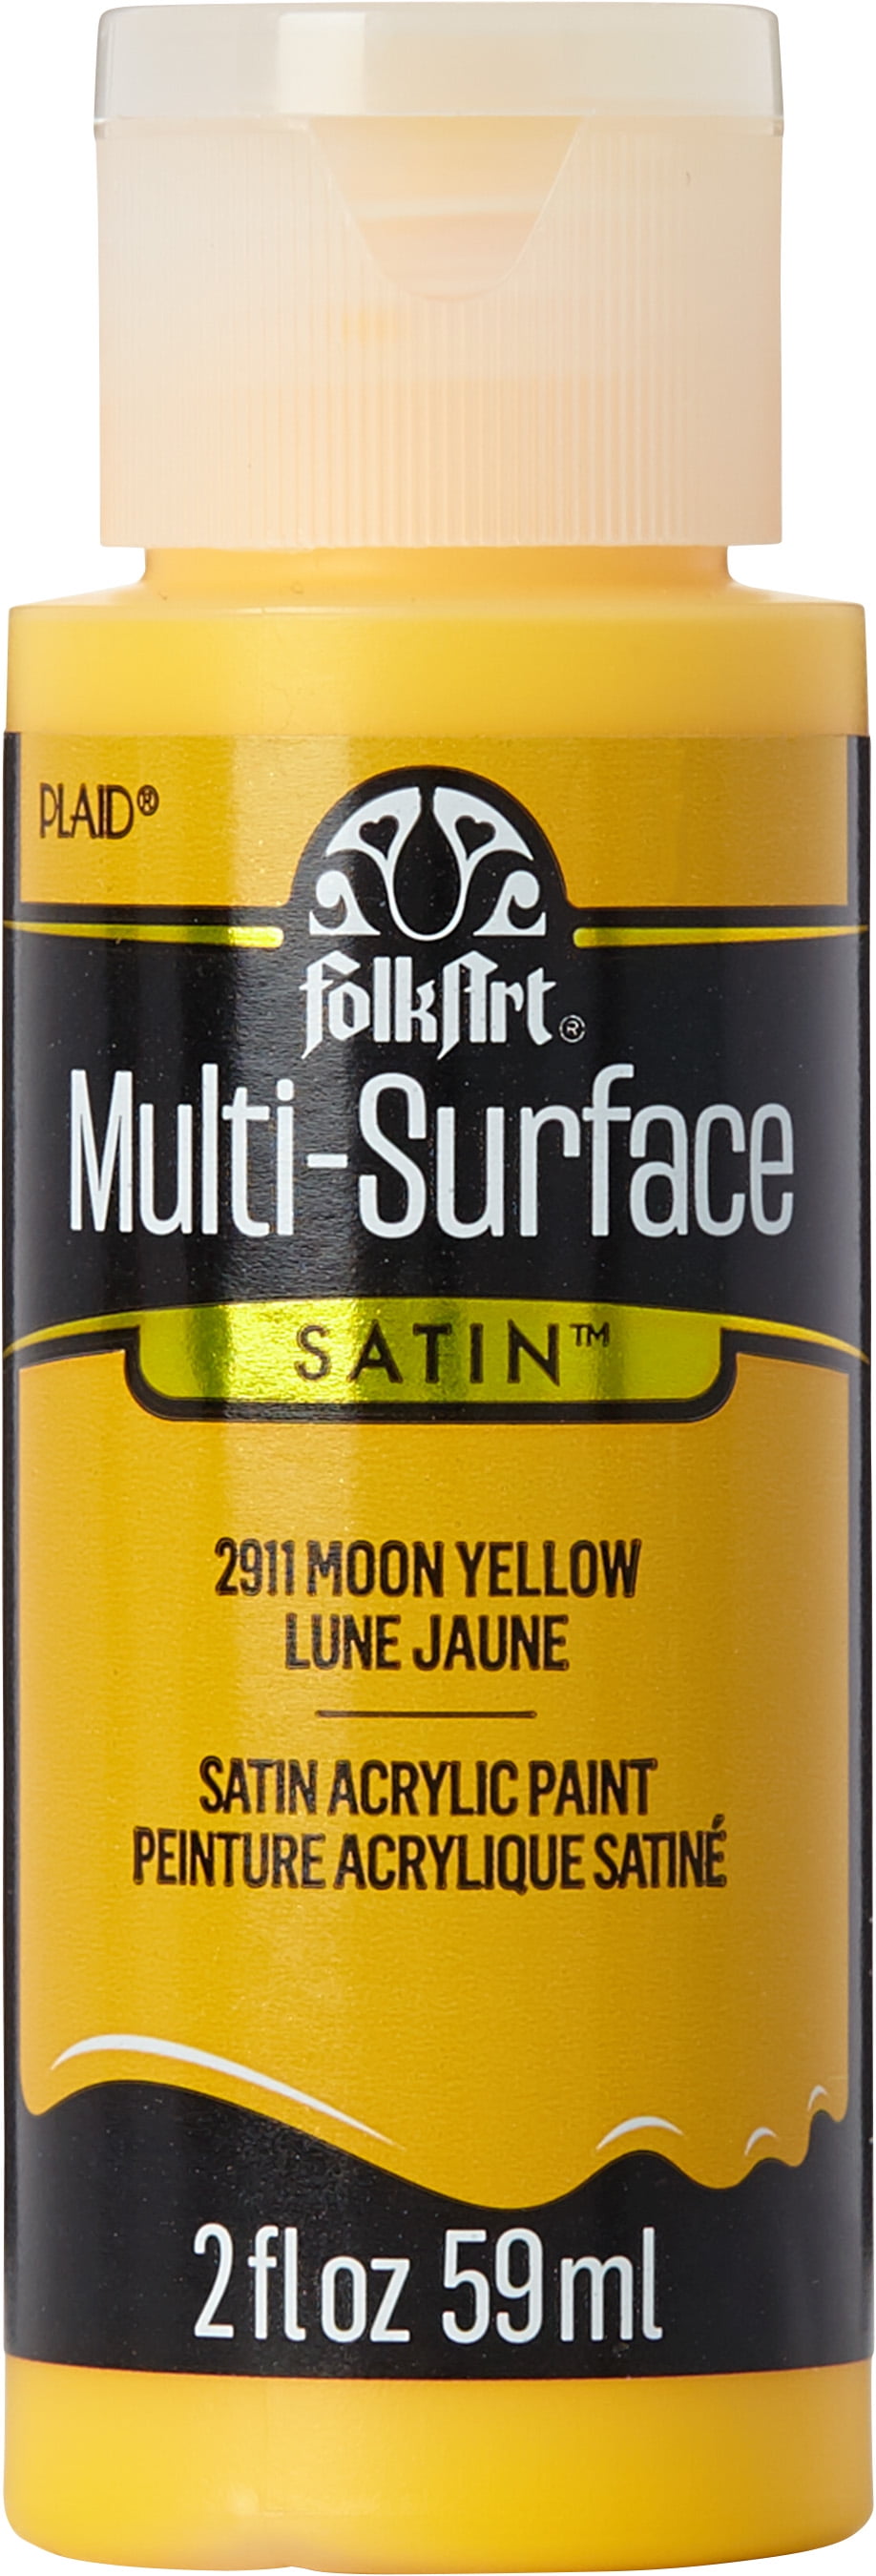 FolkArt Acrylic Craft Paint, Matte Finish, Daffodil Yellow, 2 fl oz 